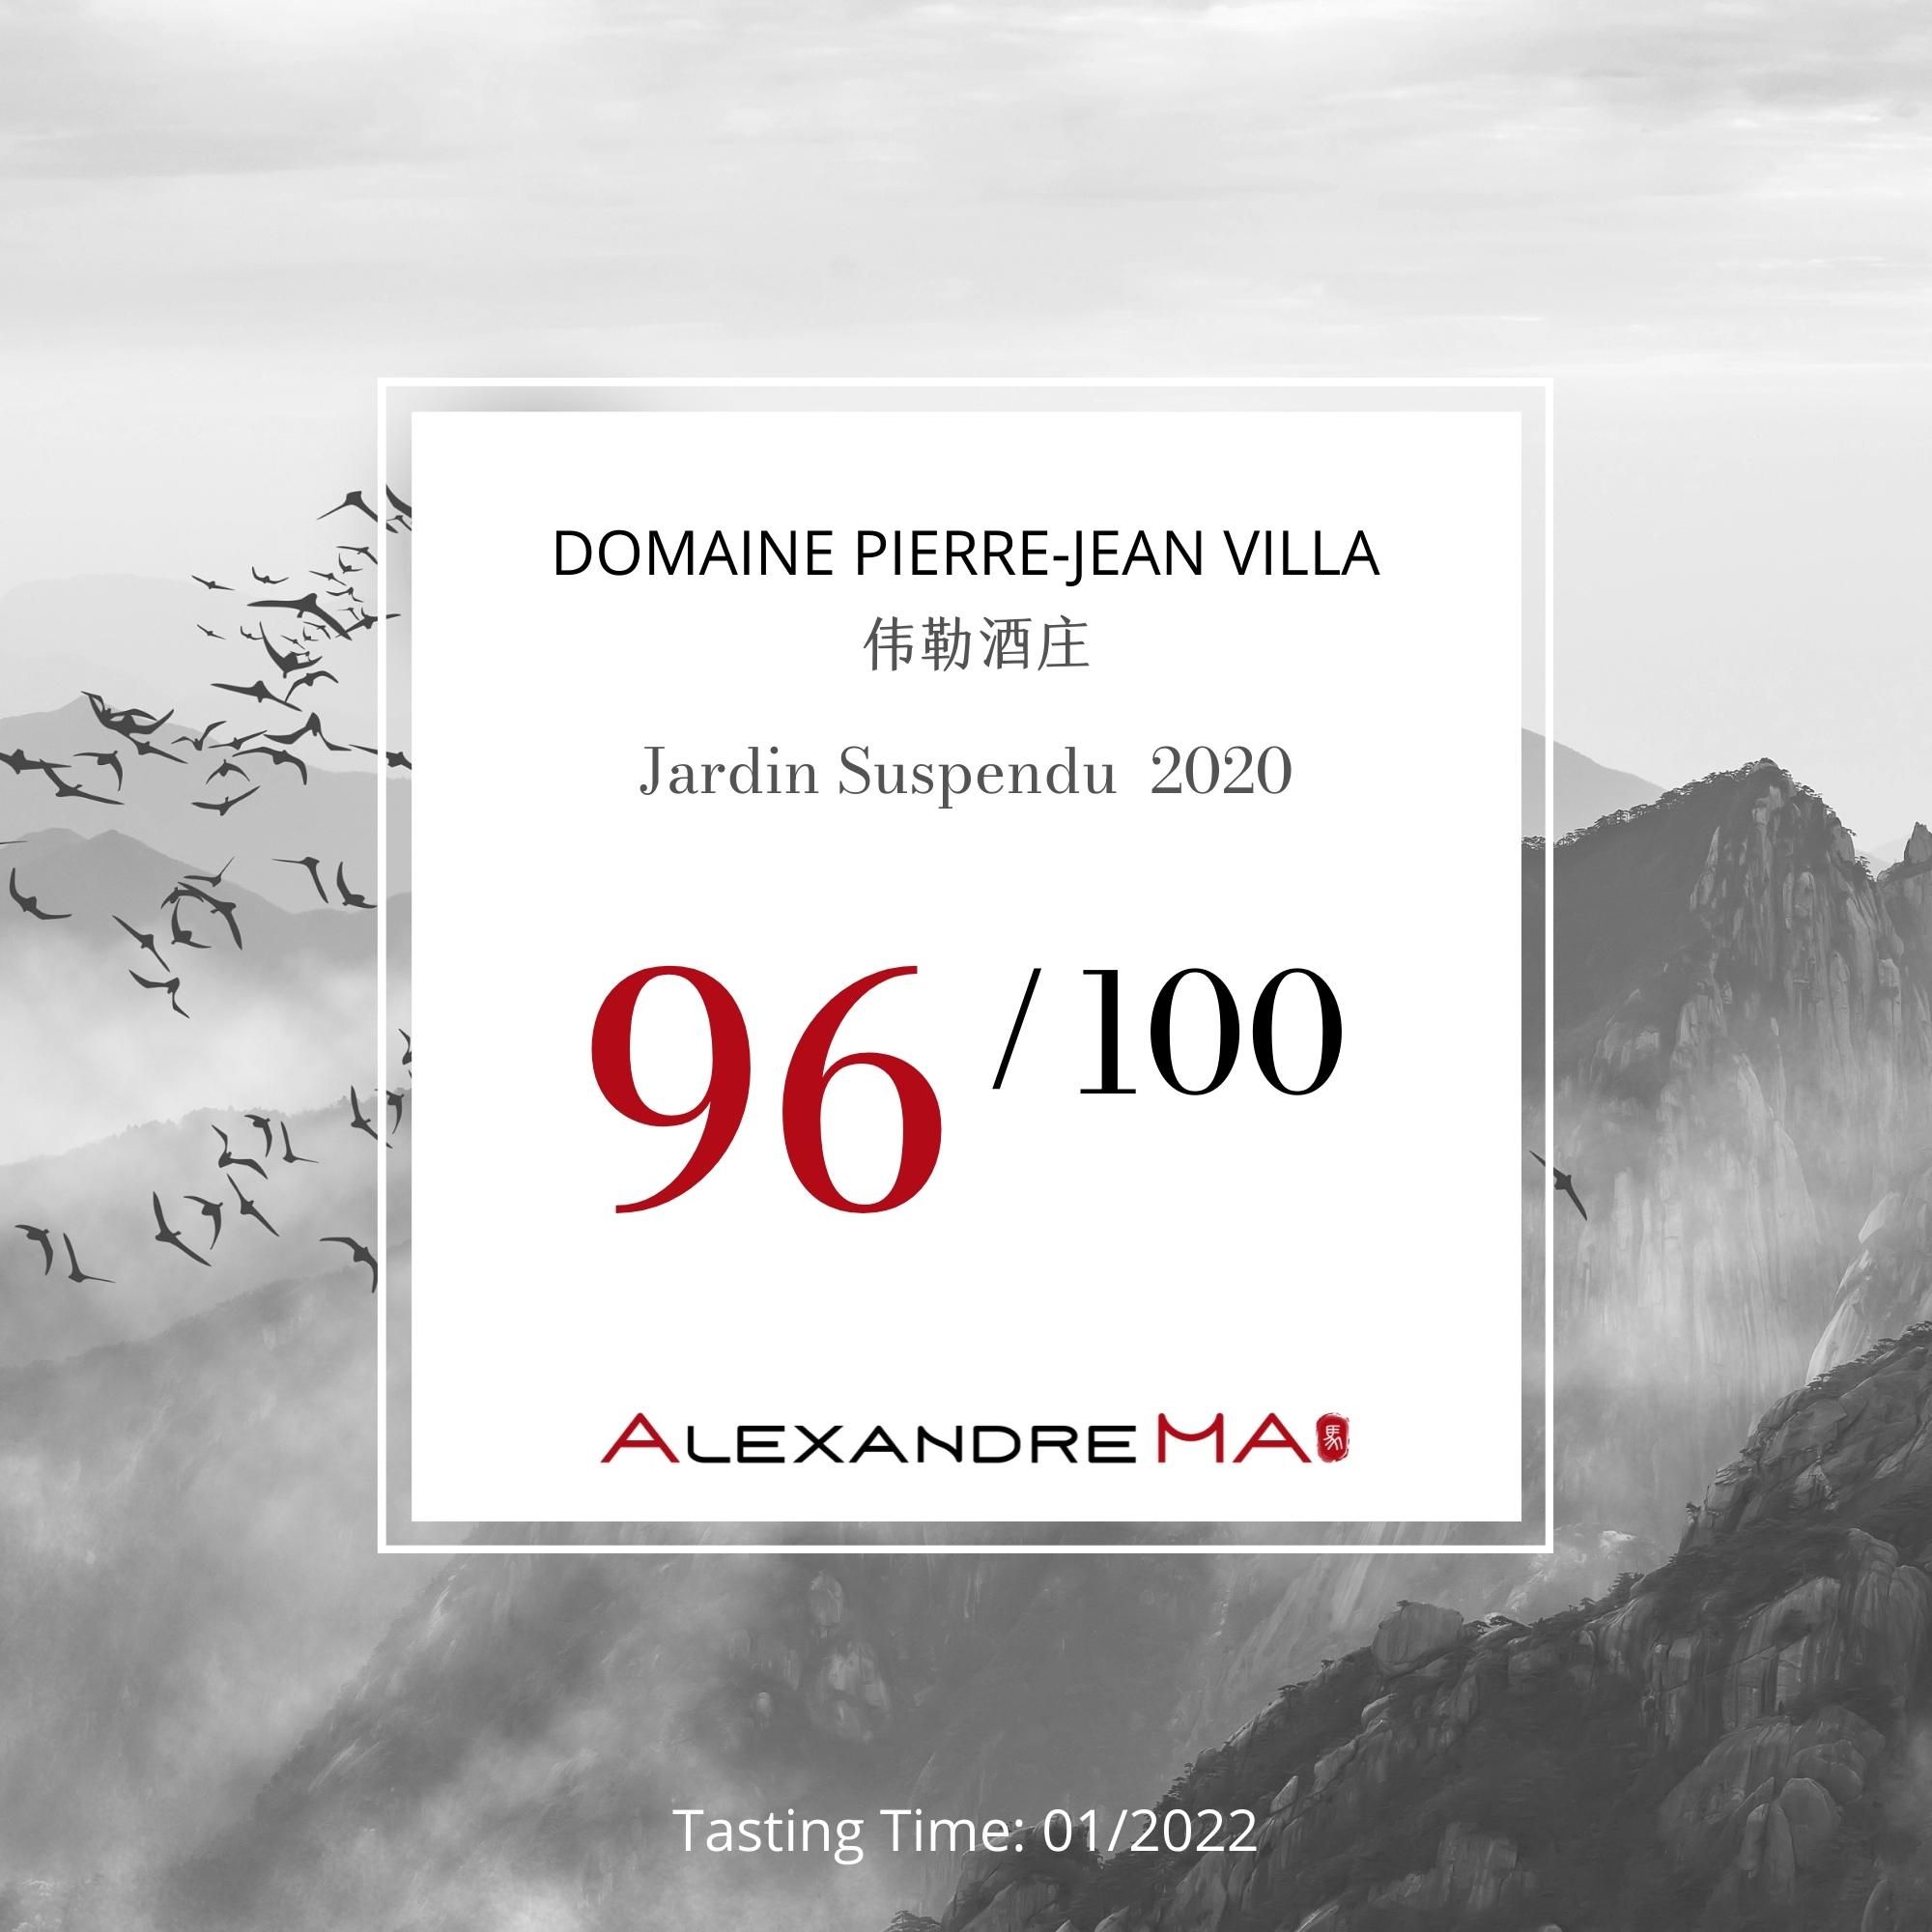 Domaine Pierre Jean Villa 伟勒酒庄- Jardin Suspendu 2020 - Alexandre Ma